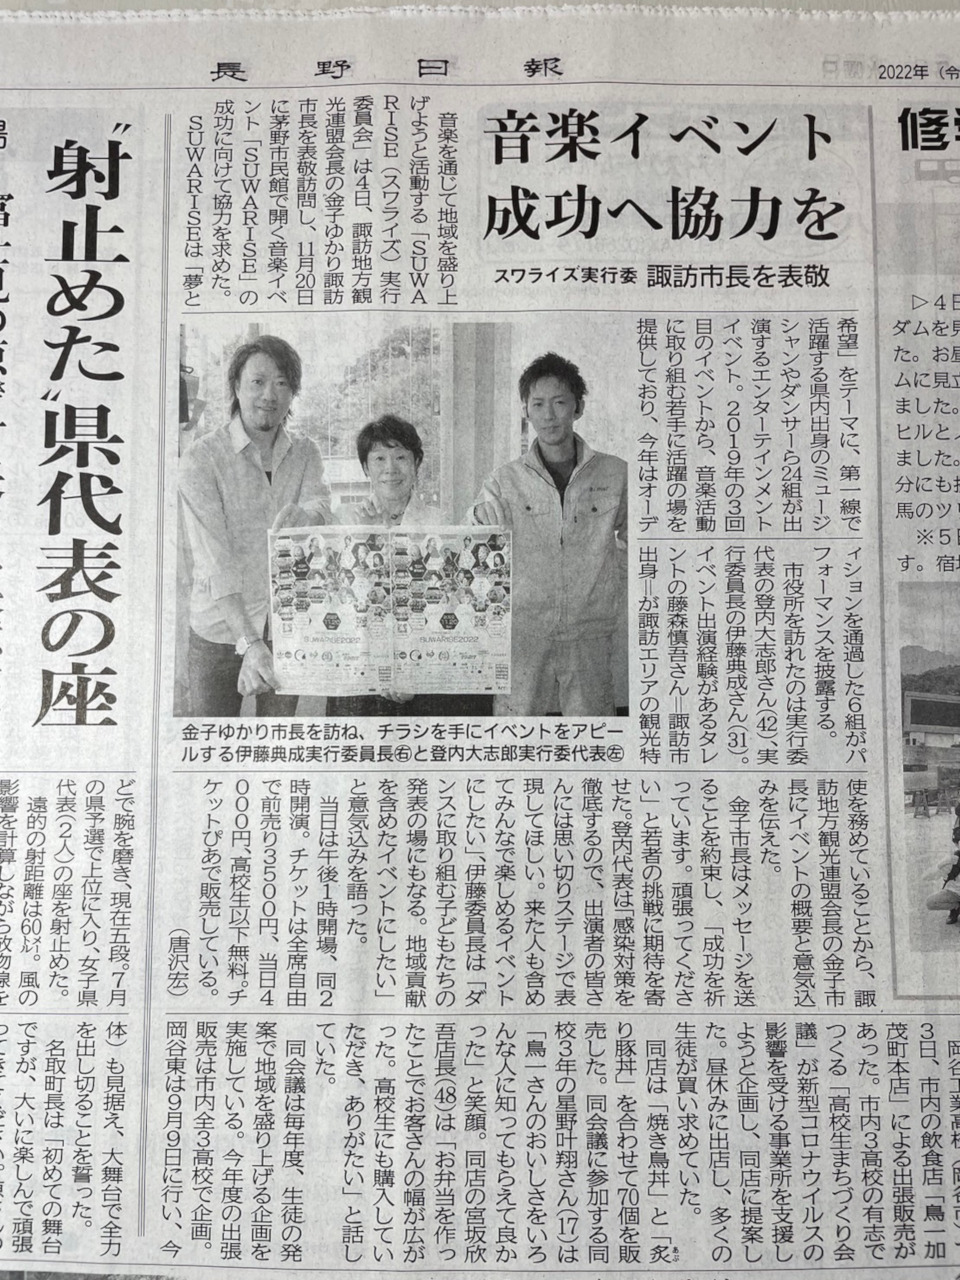 SUWARISE実行委員会として諏訪市長を表敬訪問した際の記事が長野日報に掲載されました。